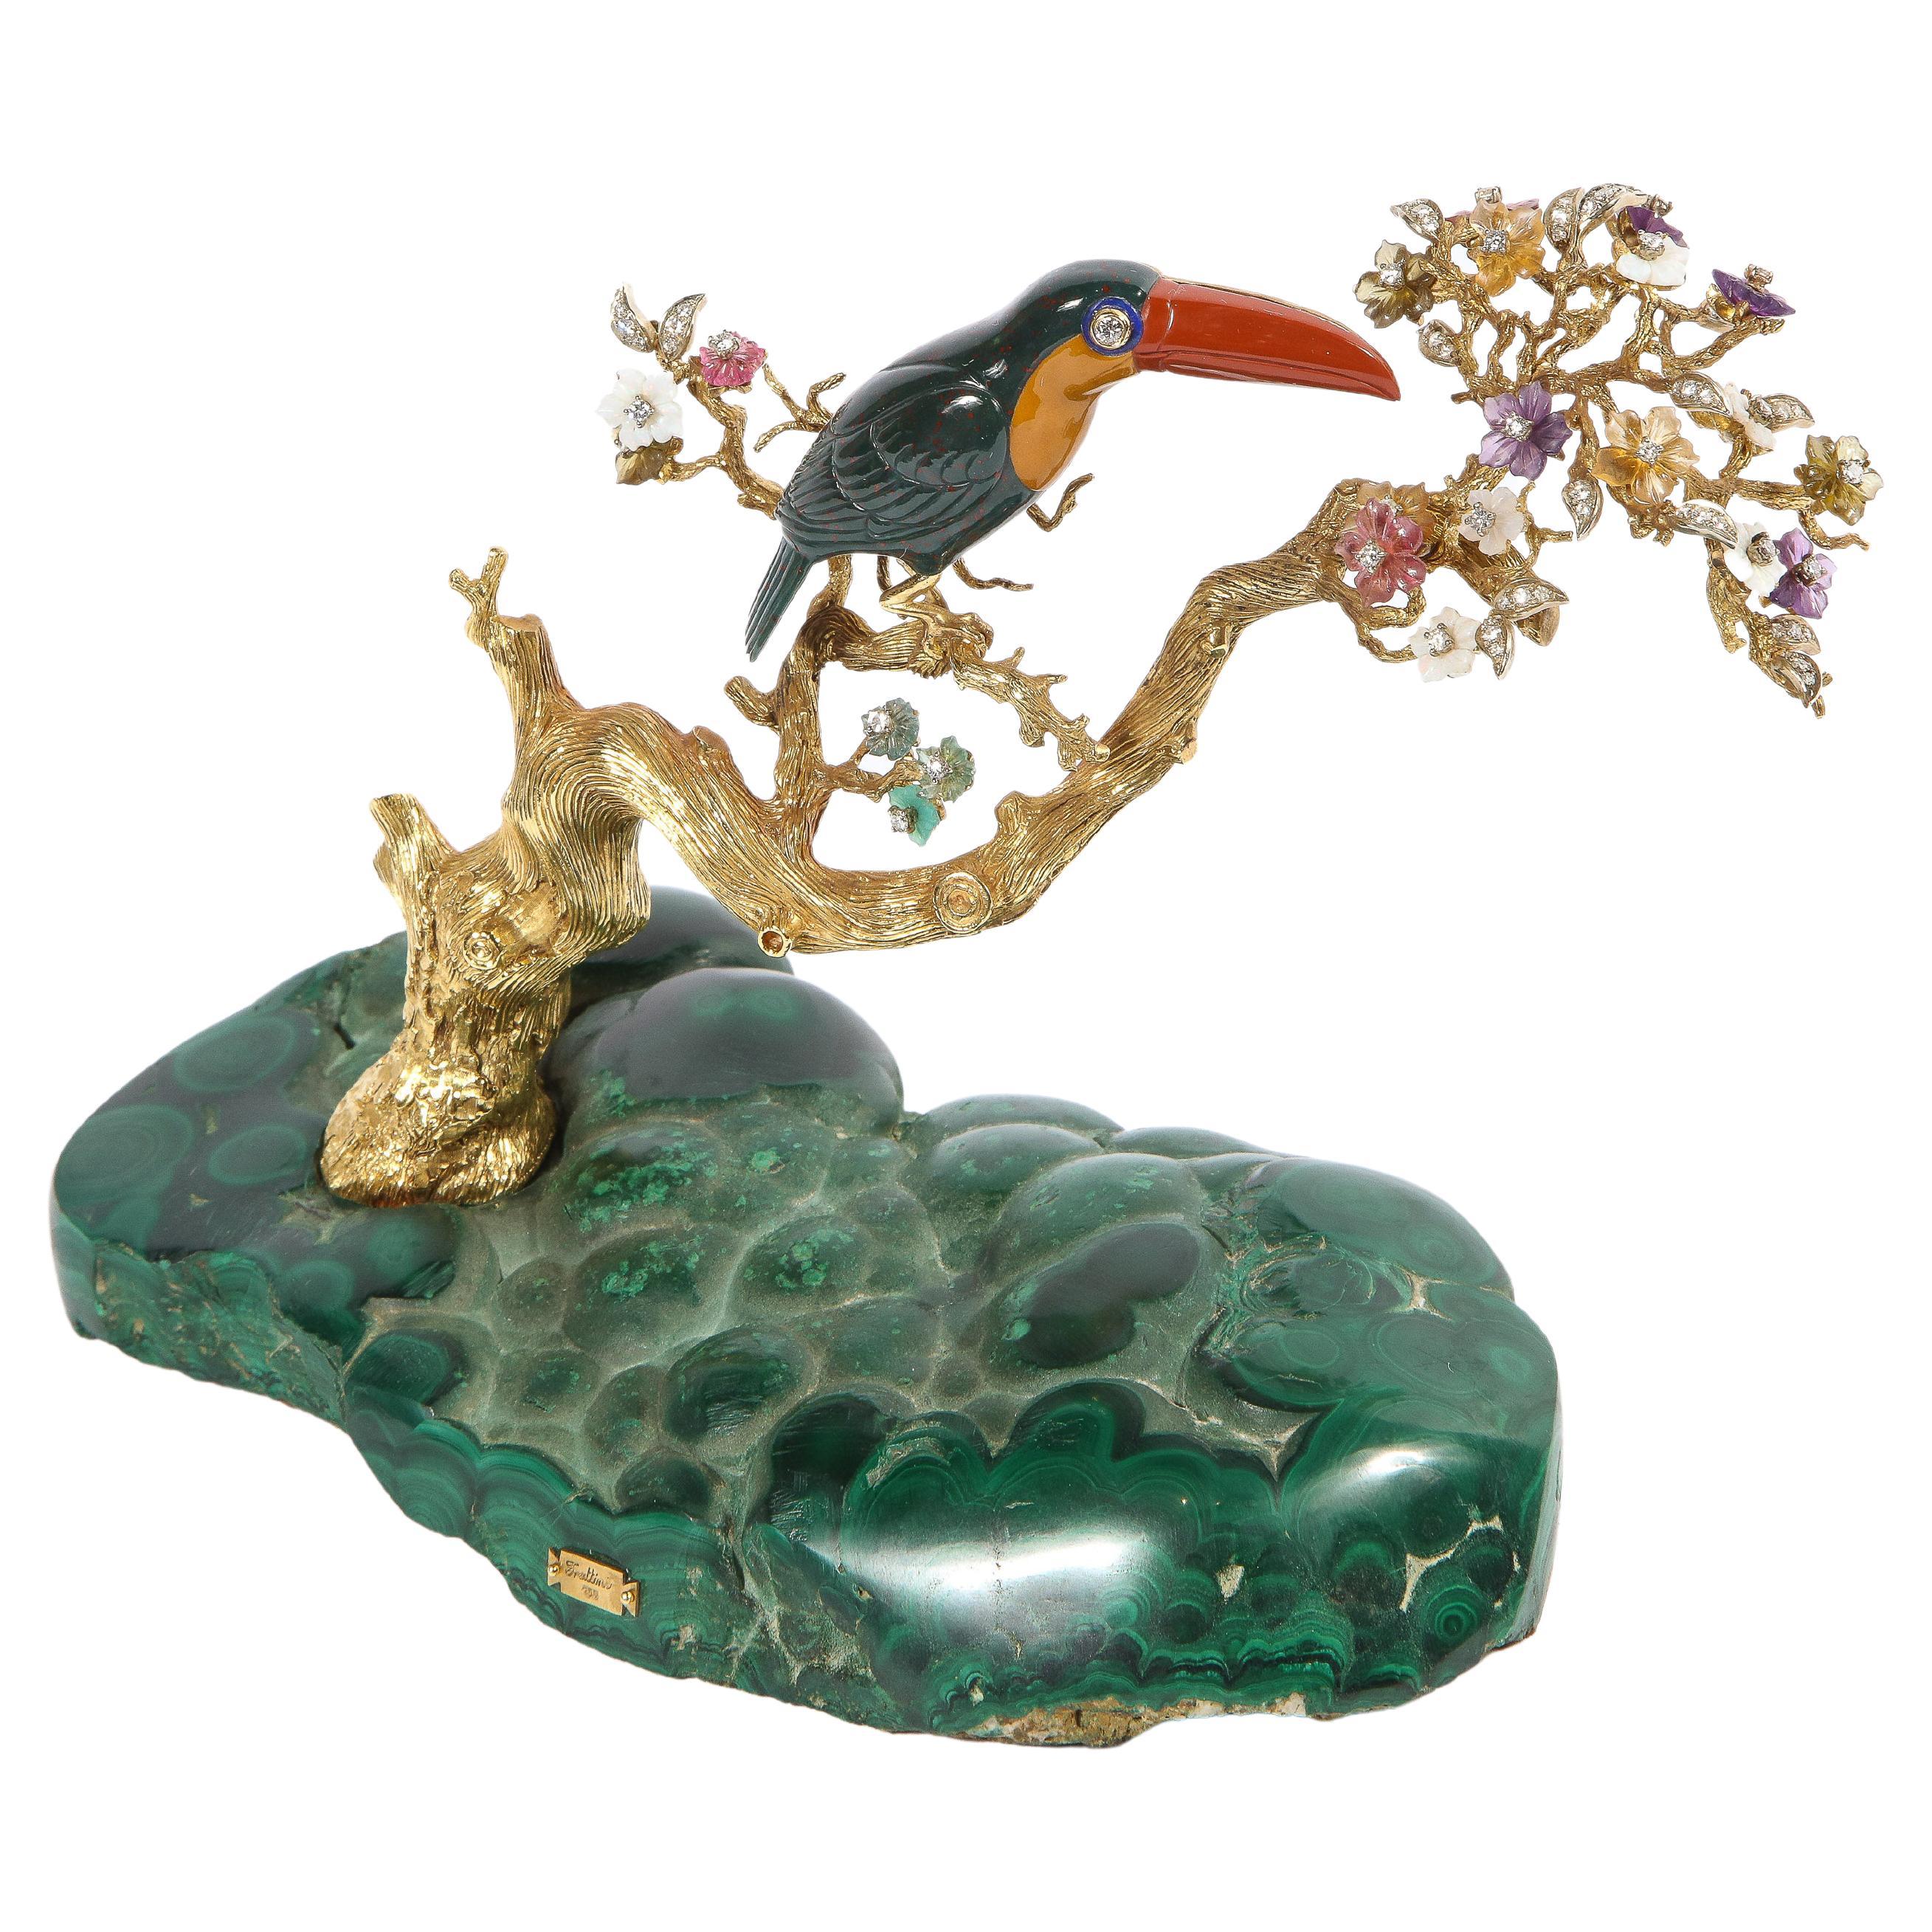 Ein toukanischer Vogel aus 18 Karat Gold, Diamanten, Amethysten, Turmalin, Blutstein, geschnitztem Smaragd, Opal und Jaspis auf einem goldenen Baumzweig, montiert auf einem geschnitzten Malachitsockel.

Ein sehr seltenes und einzigartiges, in Gold